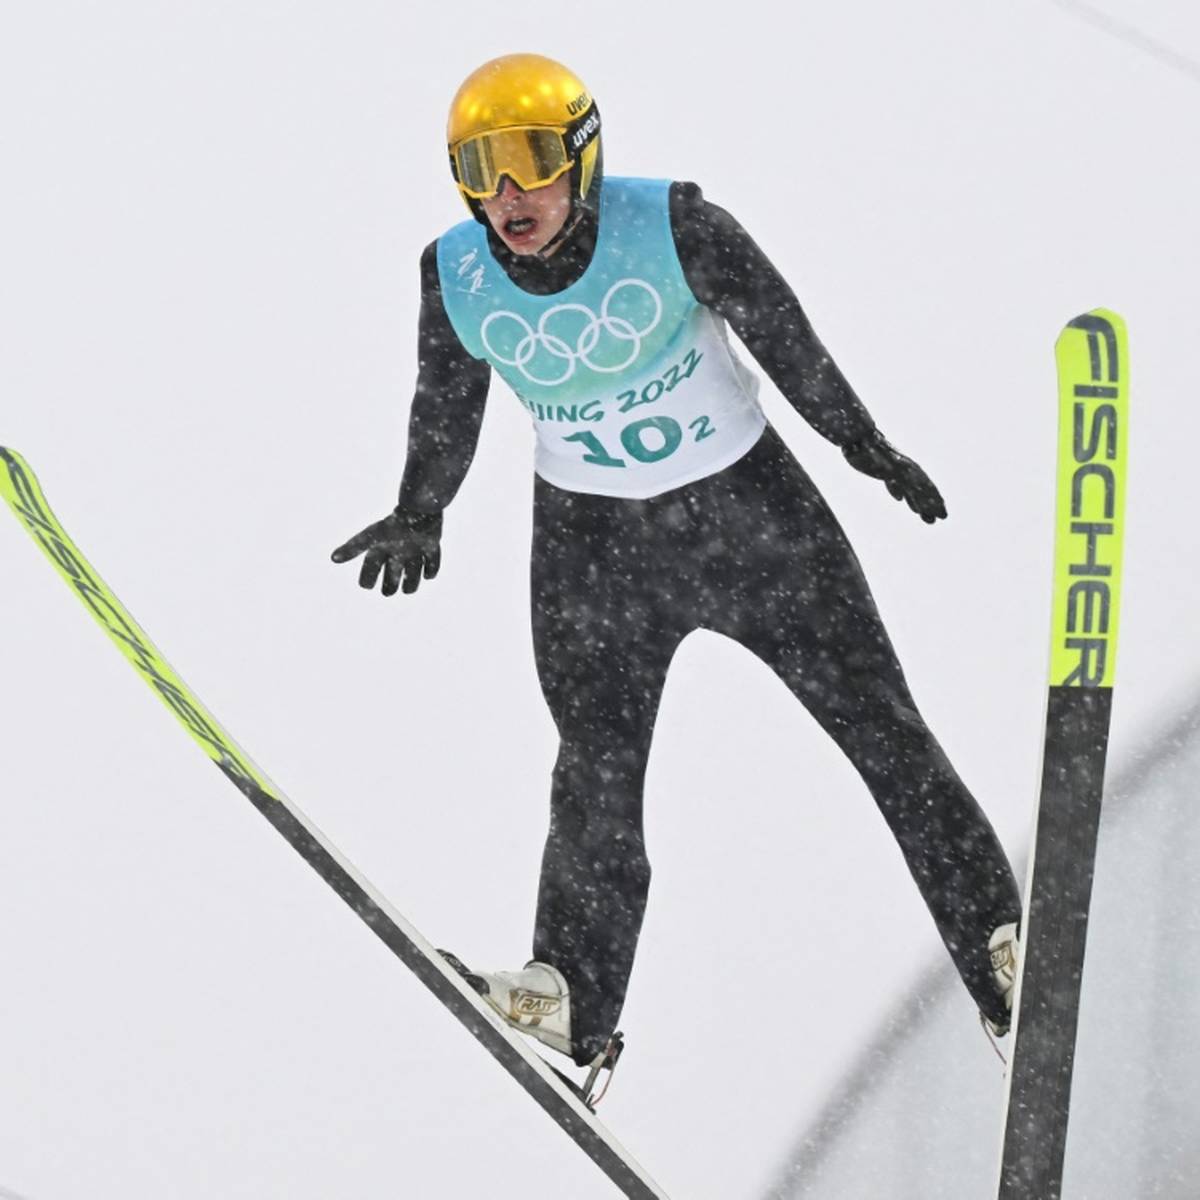 Der Kombinierer Eric Frenzel träumt davon, im kommenden Winter der nordische Skisportler mit den meisten WM-Medaillen zu werden.